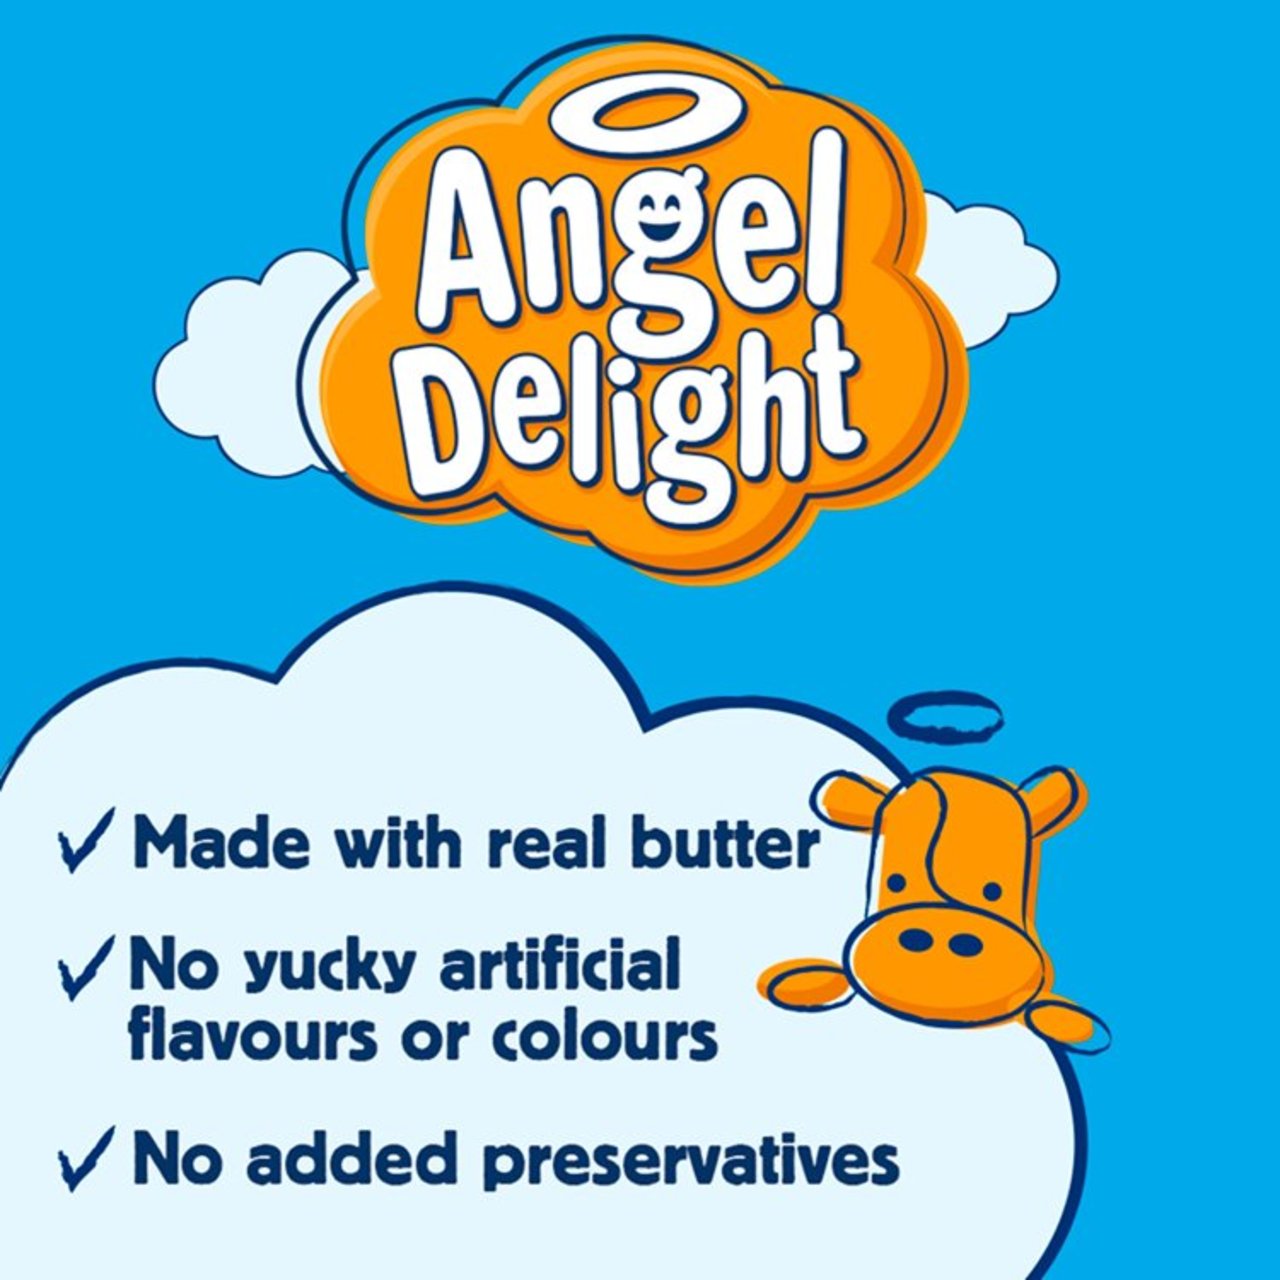 Angel Delight Butter Scotch Flavour 59g - Creamy Dessert Mix